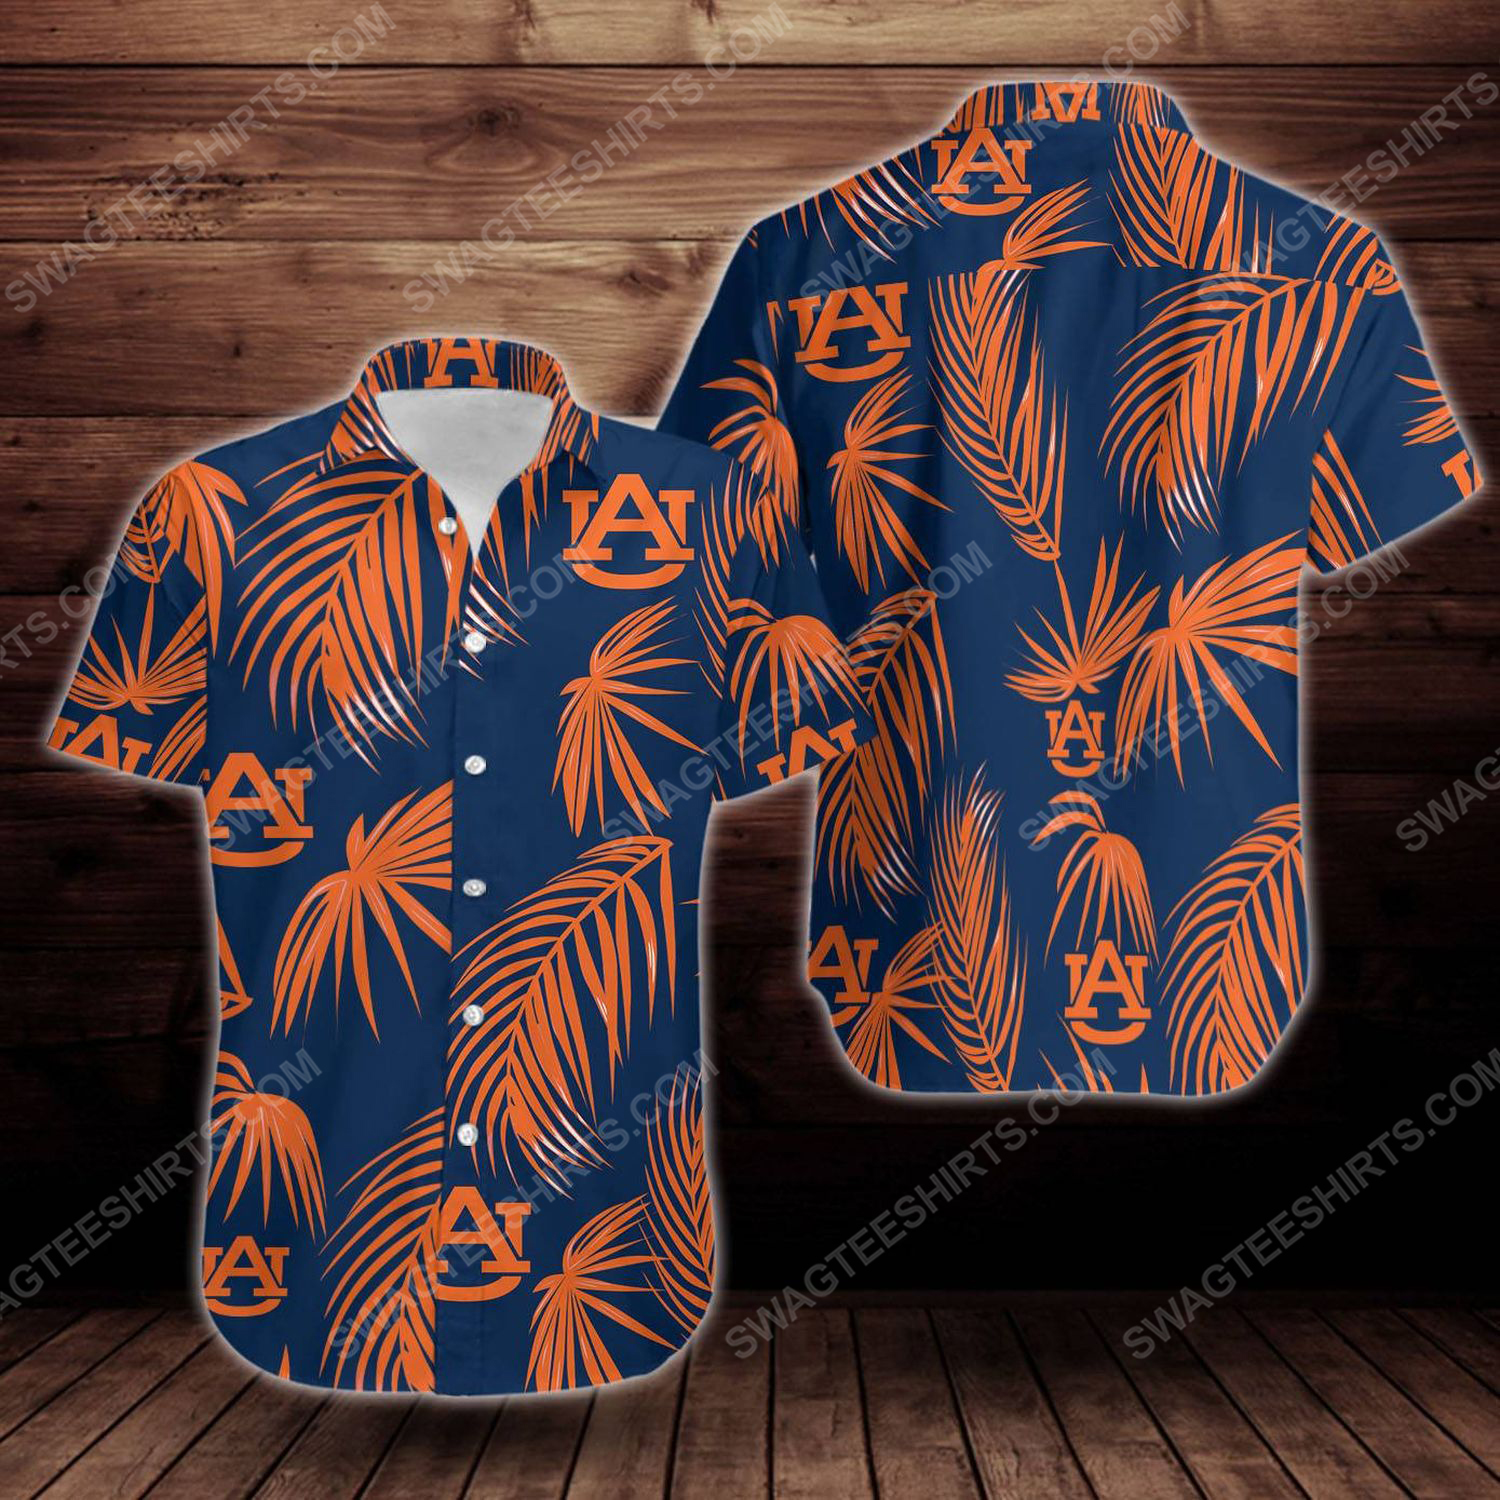 [special edition] Tropical auburn tigers short sleeve hawaiian shirt – maria